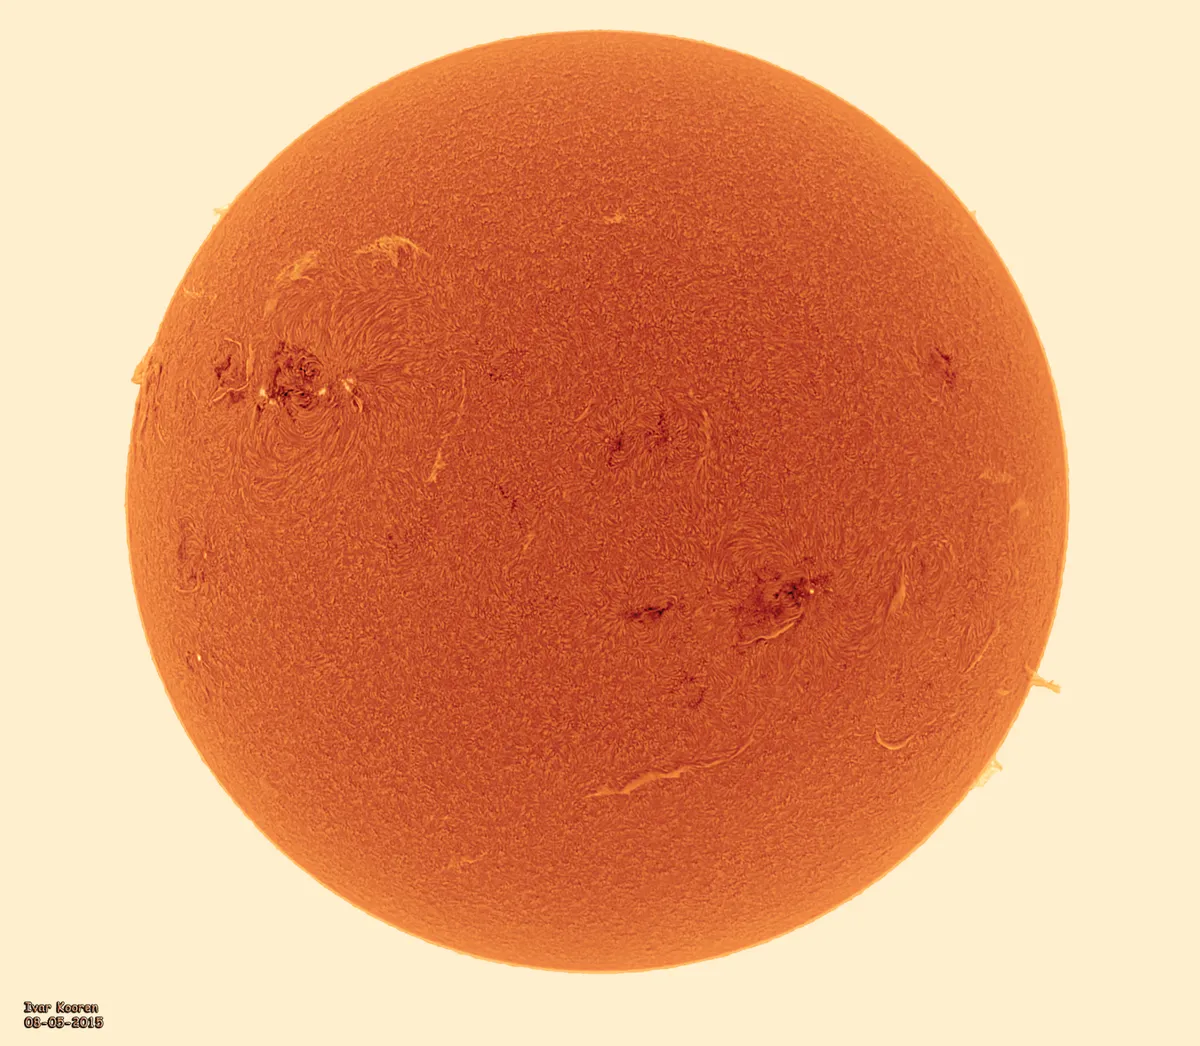 Full Disk image of the Sun by Ivar Kooren, Heenvliet, The Netherlands. Equipment: ZWO ASI174mm, Solarmax60S, NEQ6, Televue Barlow 2.5x